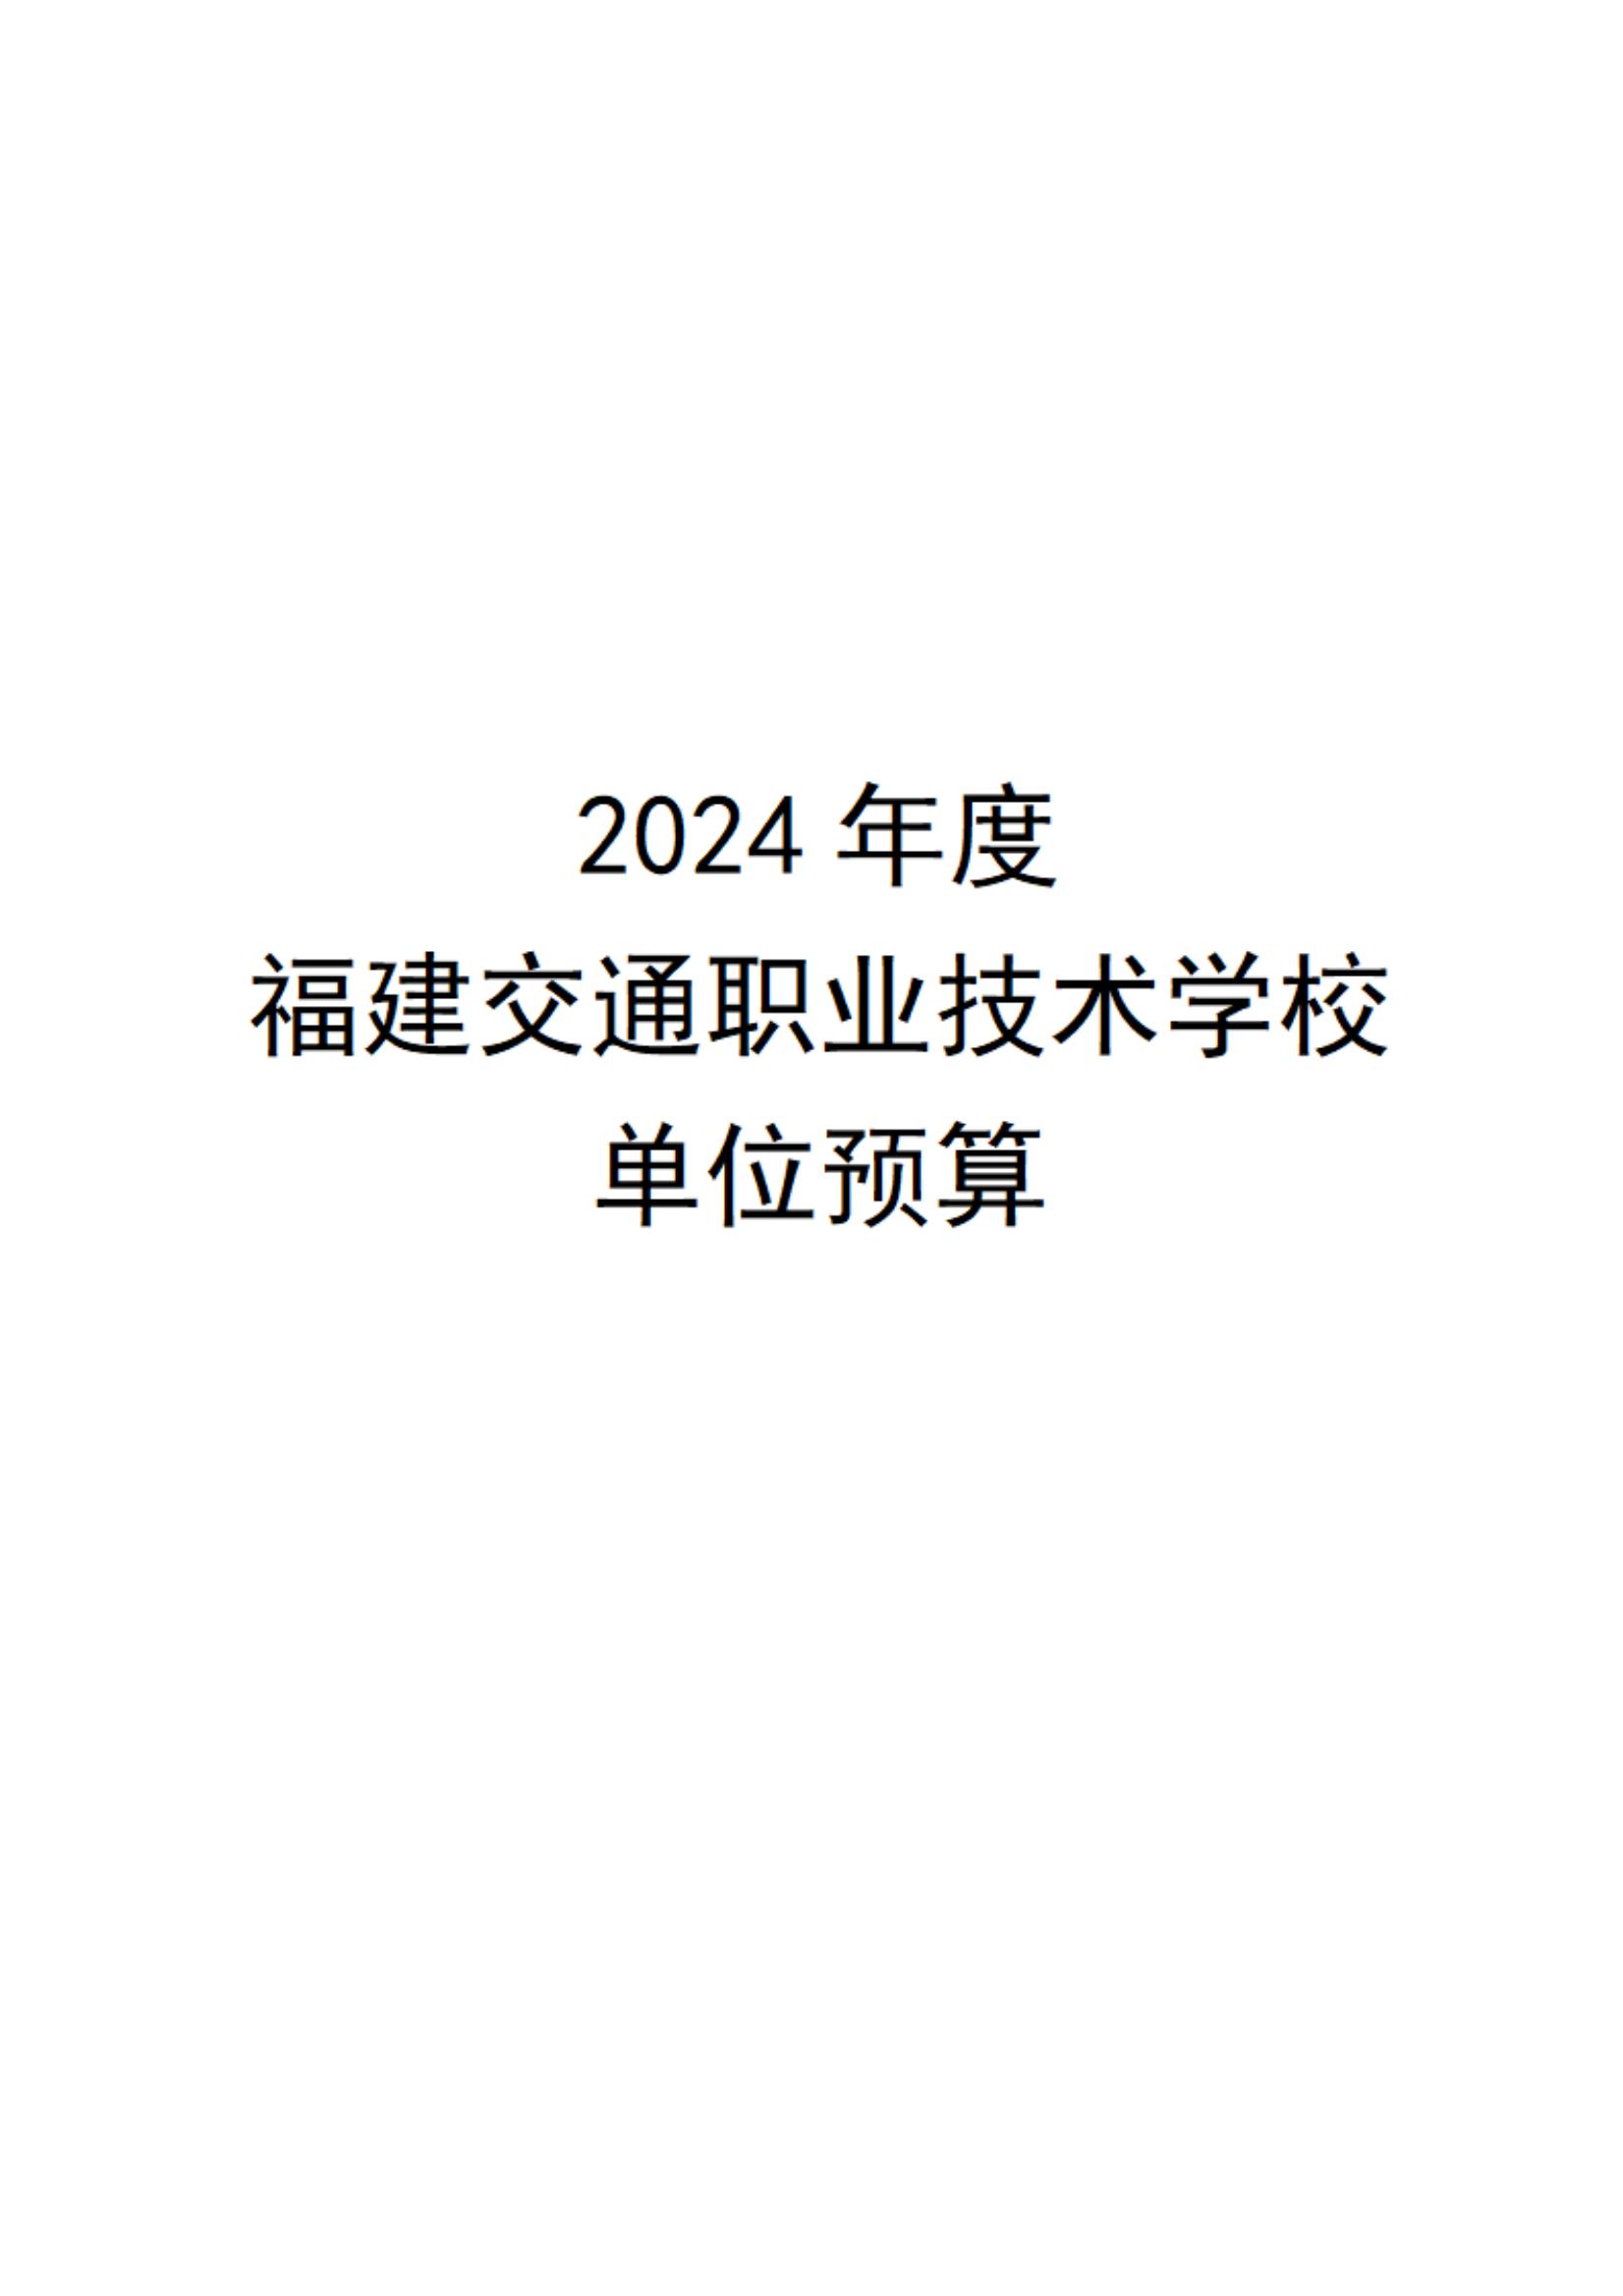 2024年度福建交通职业技术学校单位预算_00.jpg